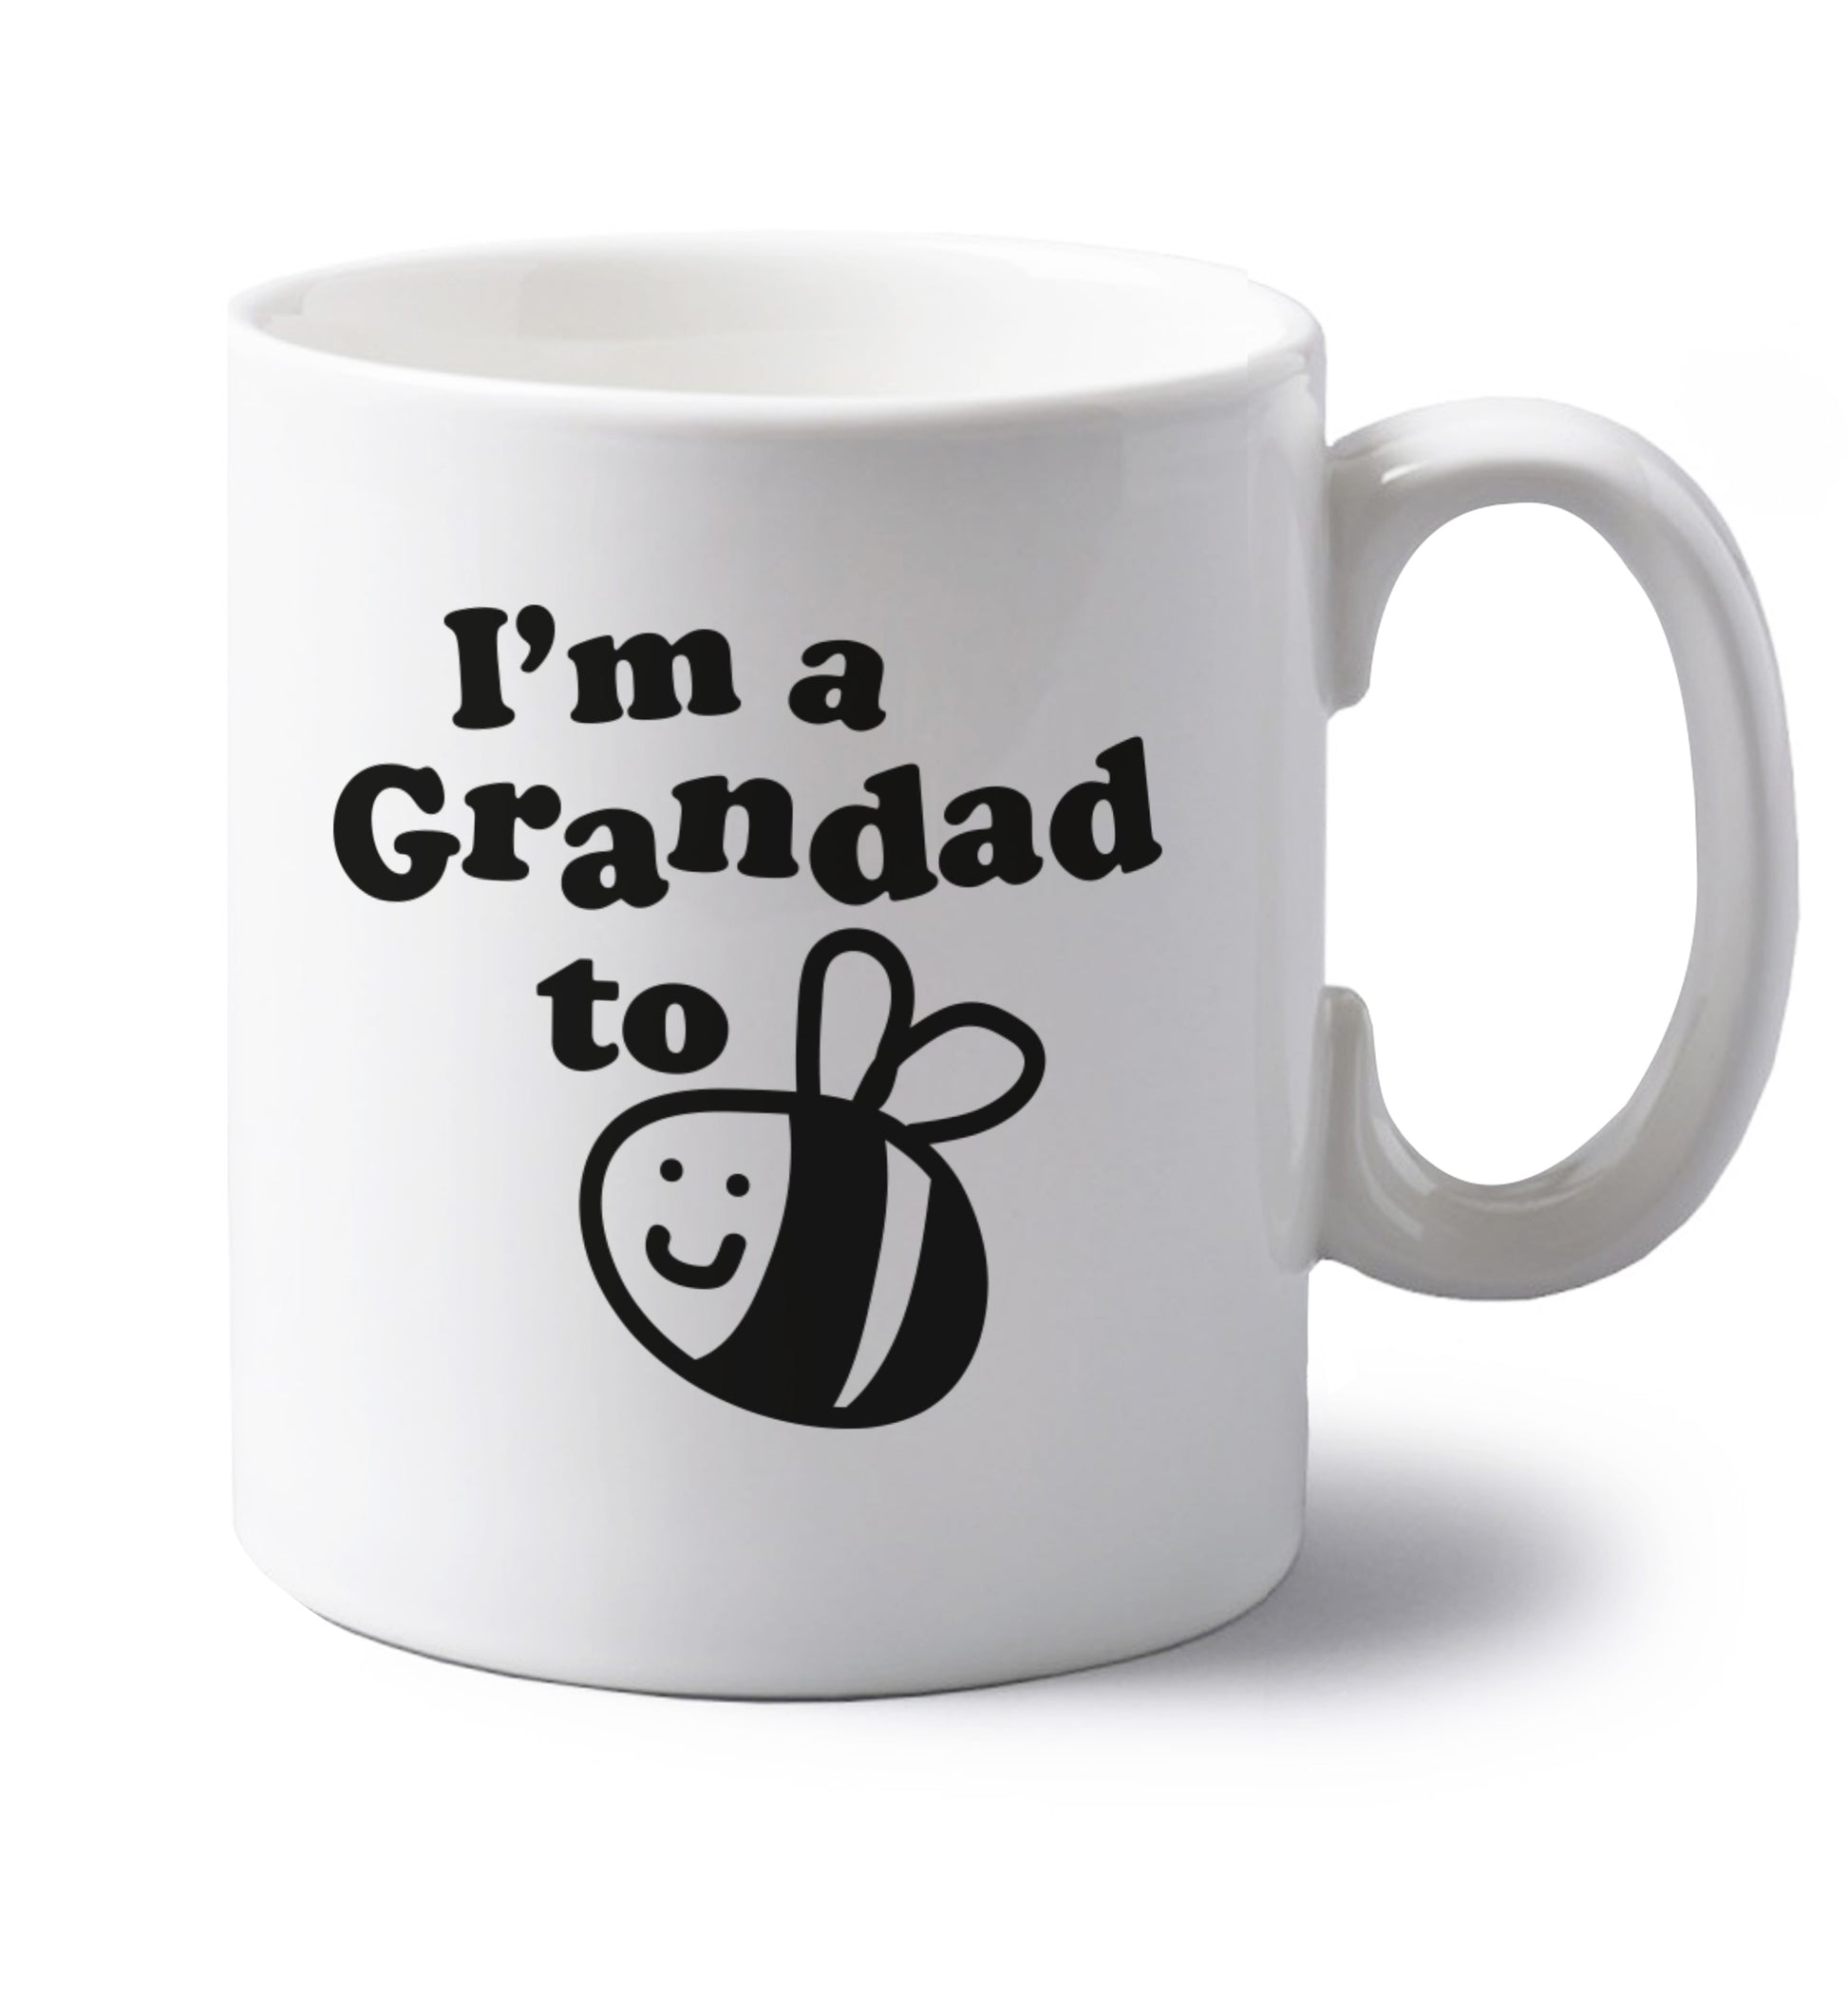 I'm a grandad to be left handed white ceramic mug 